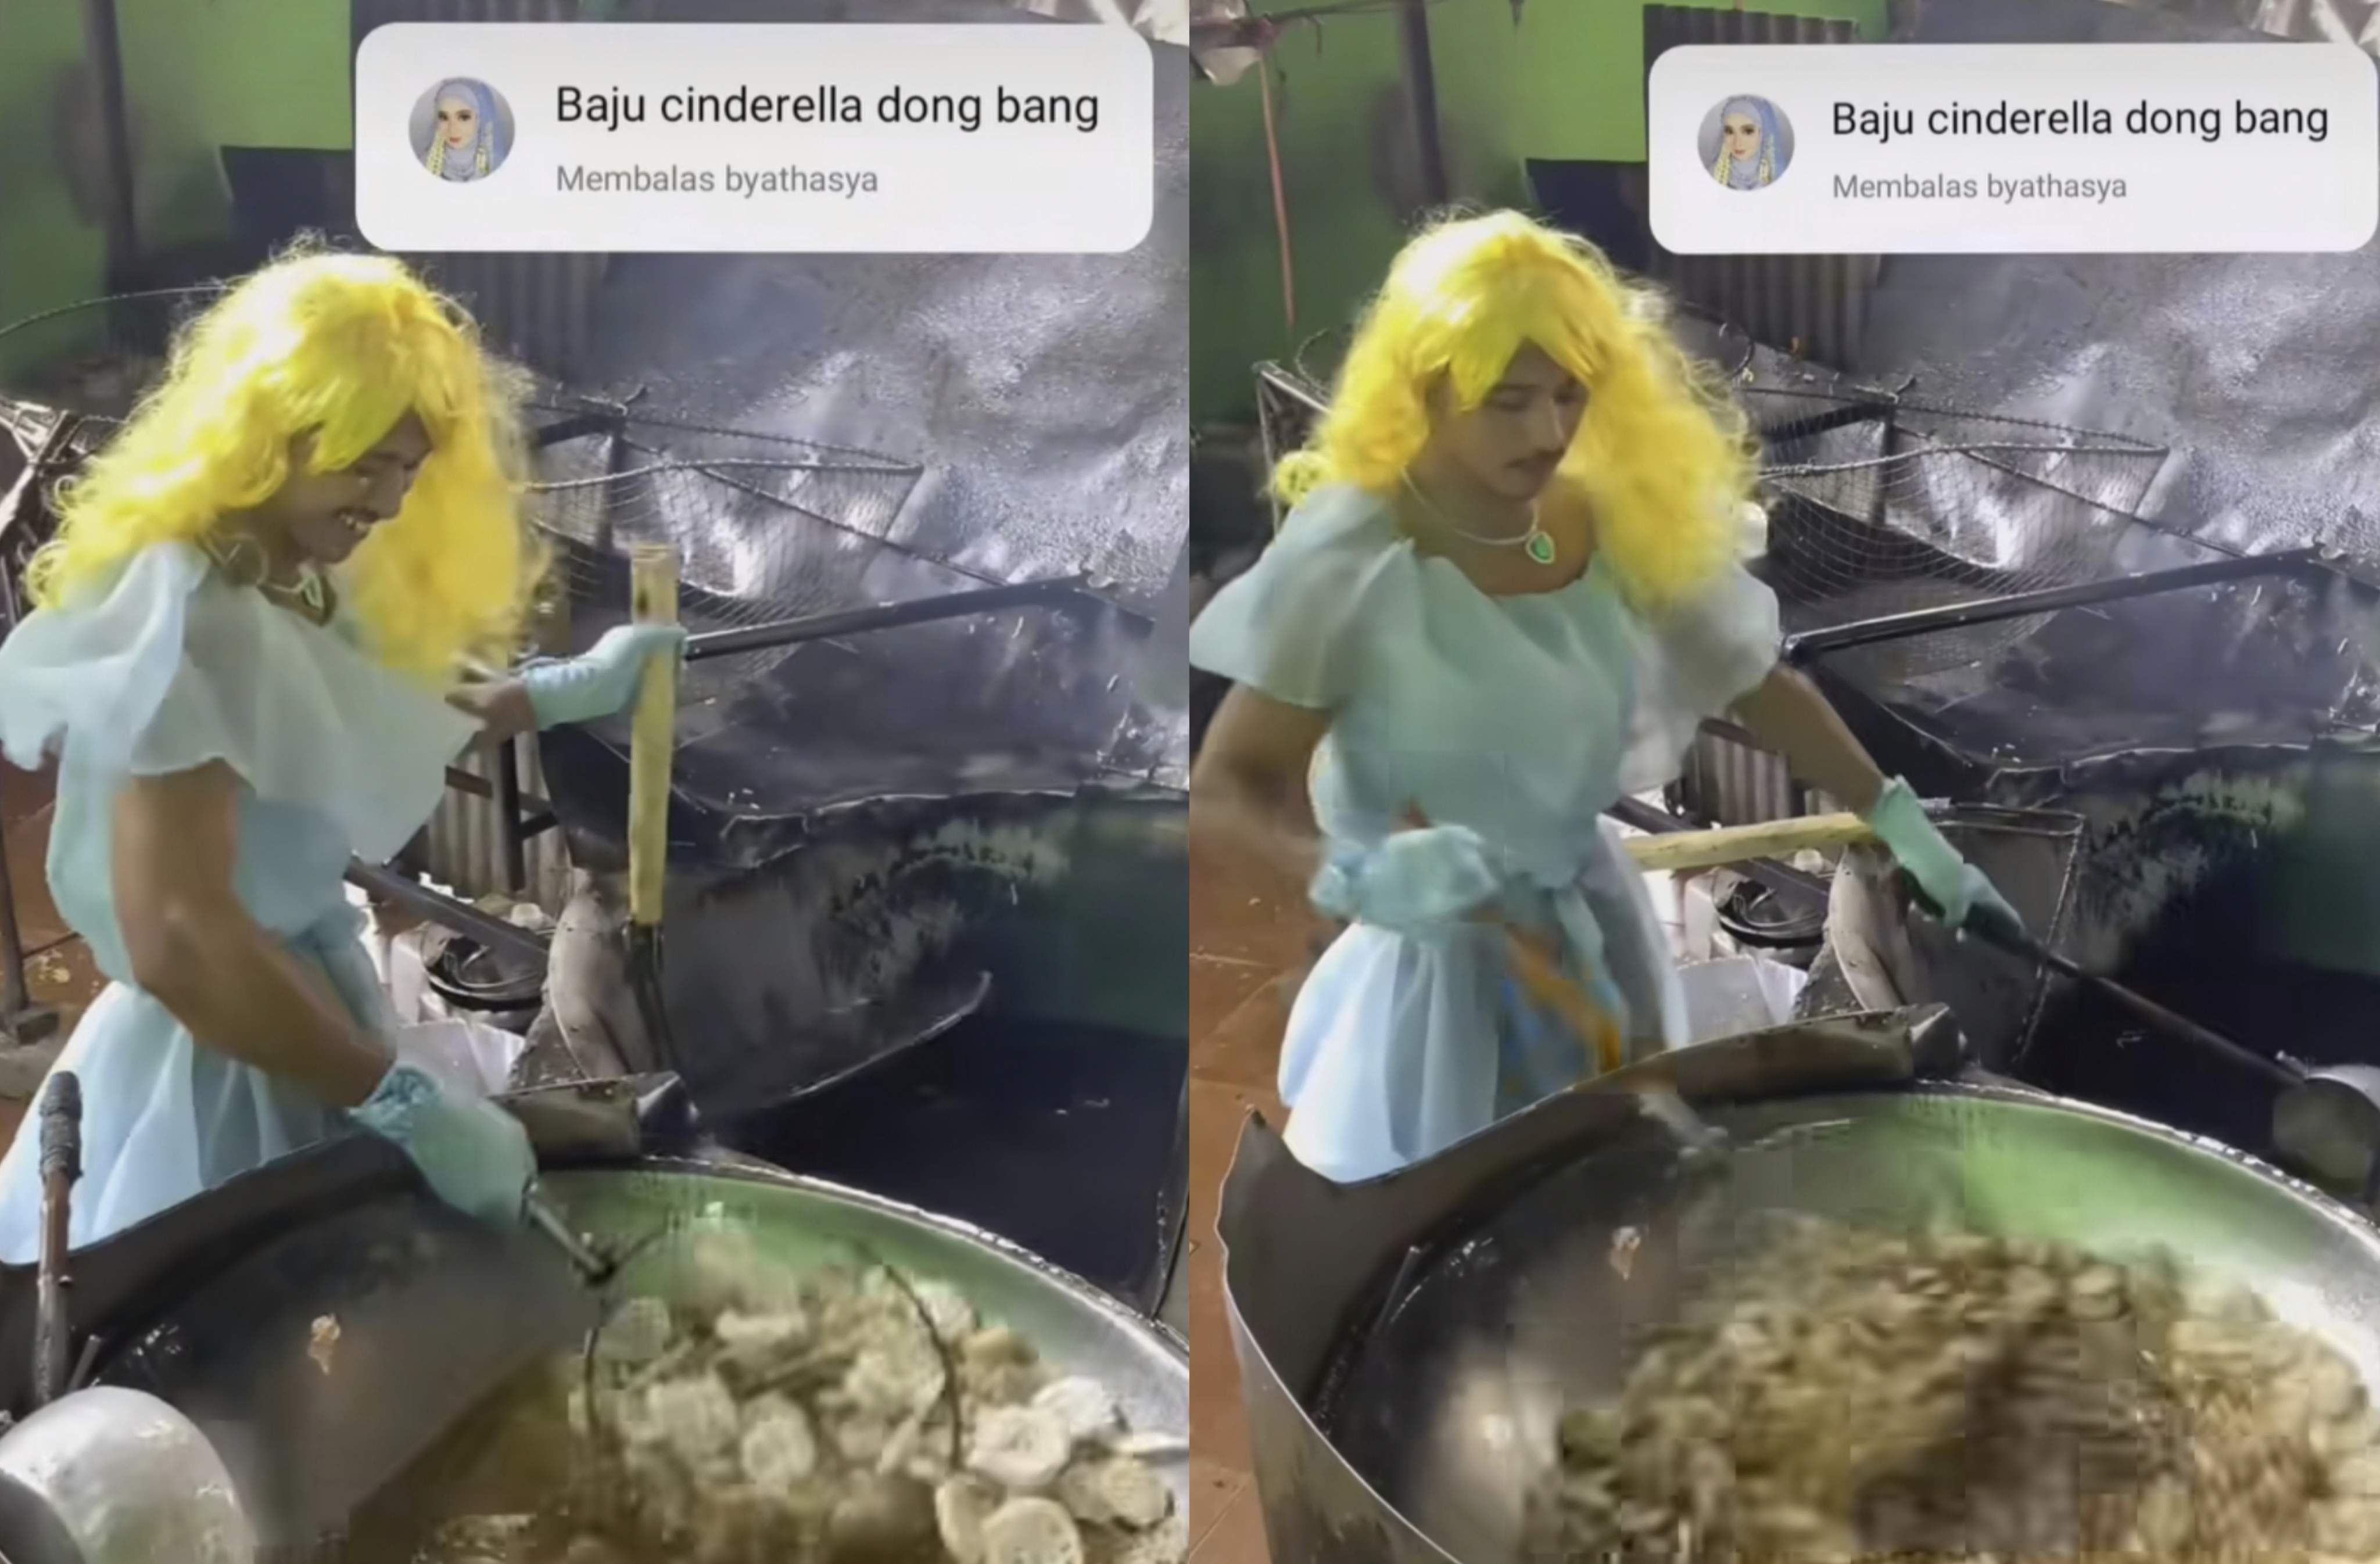 Tukang Goreng Kerupuk Pakai Kostum Cinderella Bikin Heboh, Netizen: Abangnya Cocok Jadi Anggota DPR